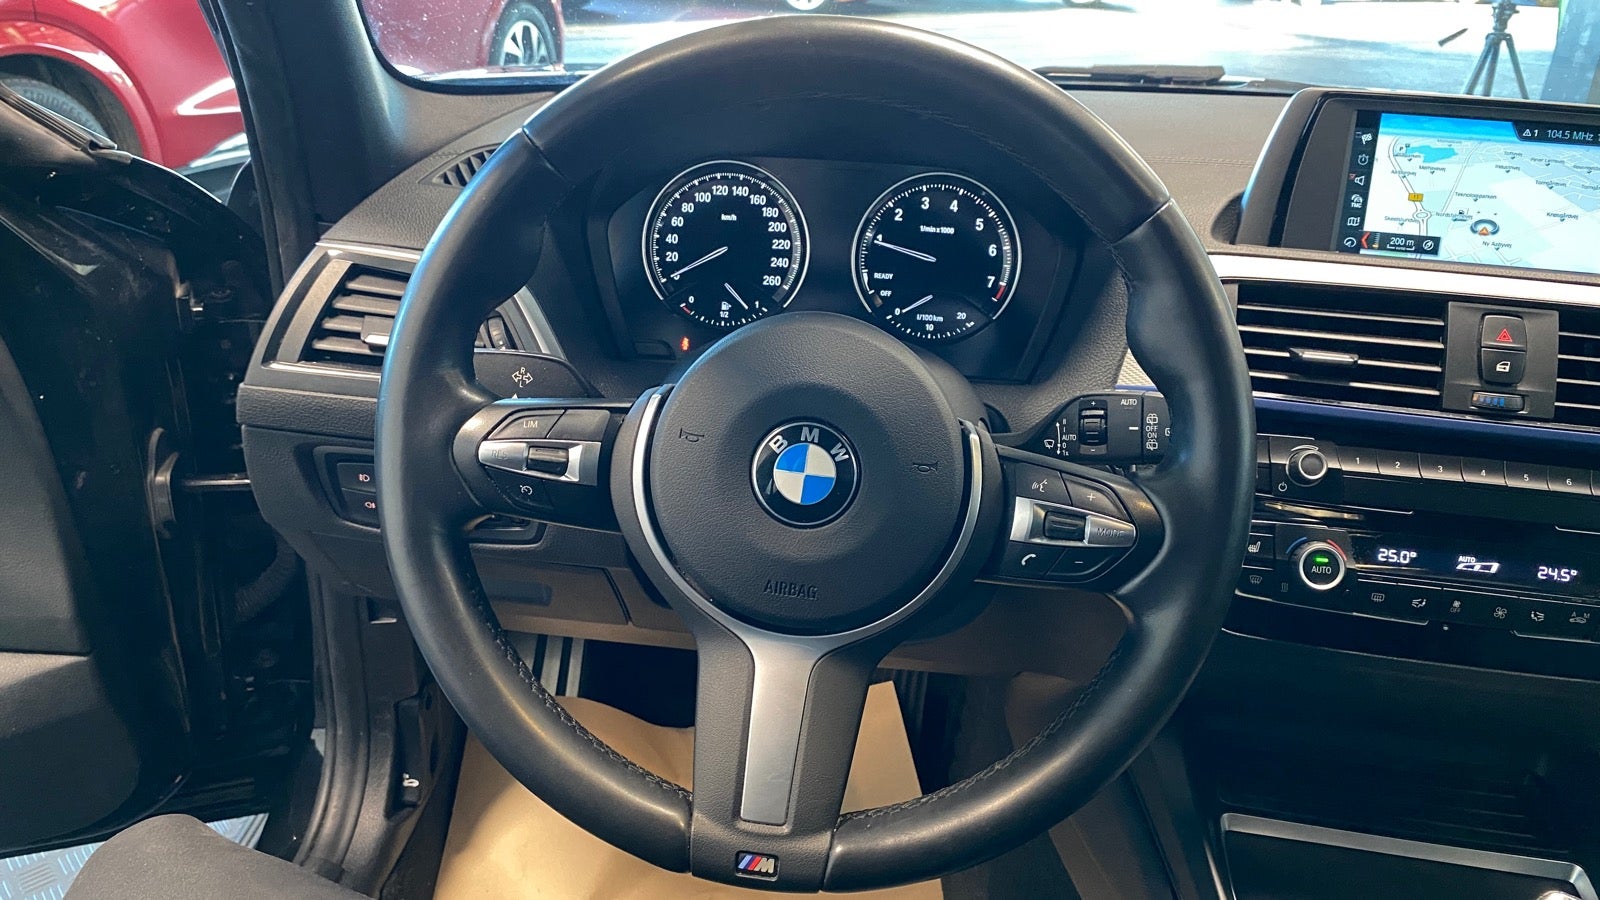 BMW 118i 2018